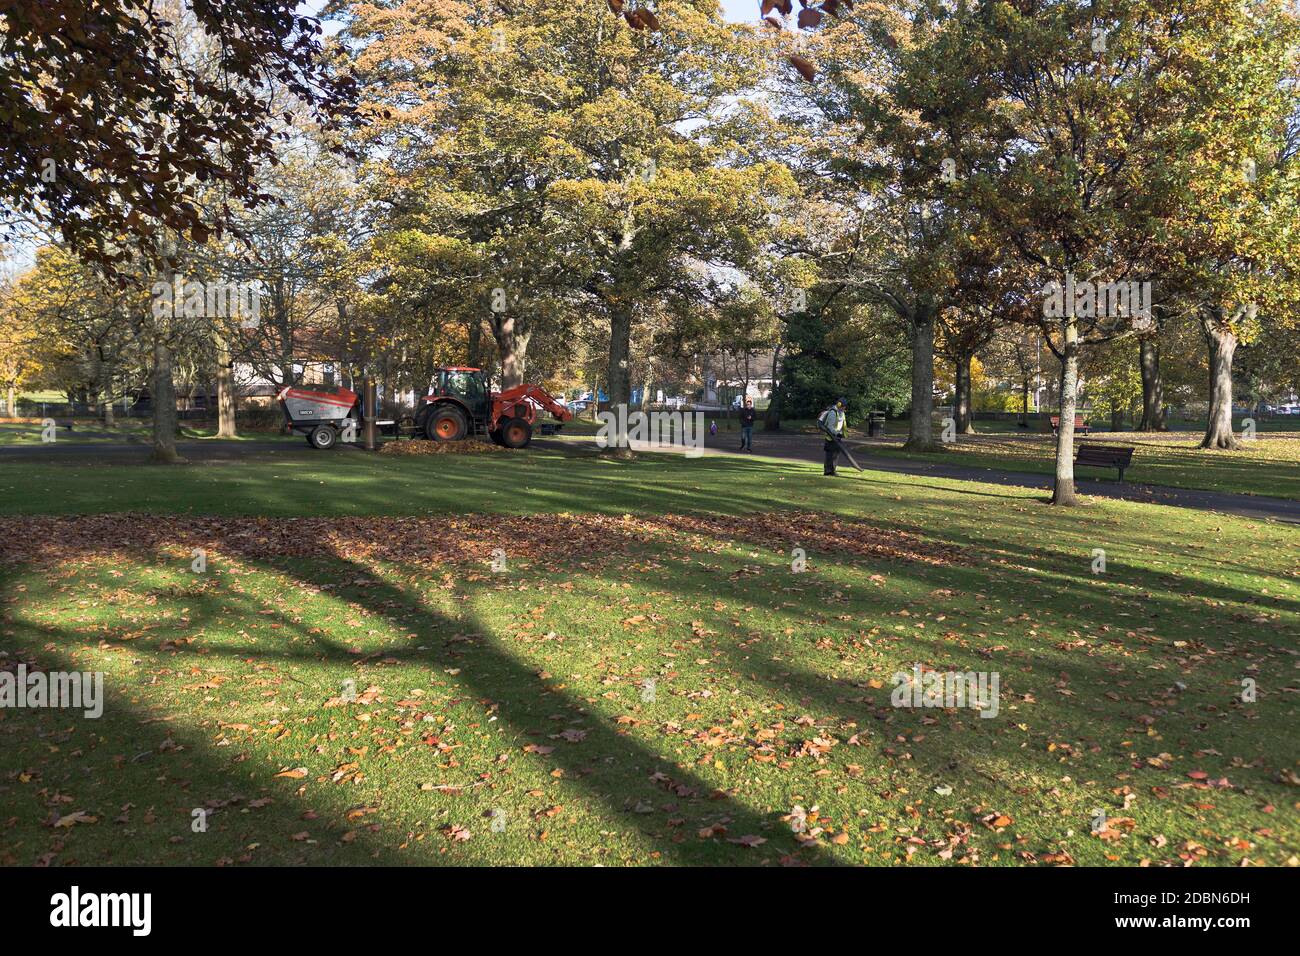 dh VICTORIA PARK ABERDEEN Council des hommes collectant des feuilles d'automne parc avec équipement d'aspiration de feuilles de tracteur couleurs automnales parcs écossais Banque D'Images